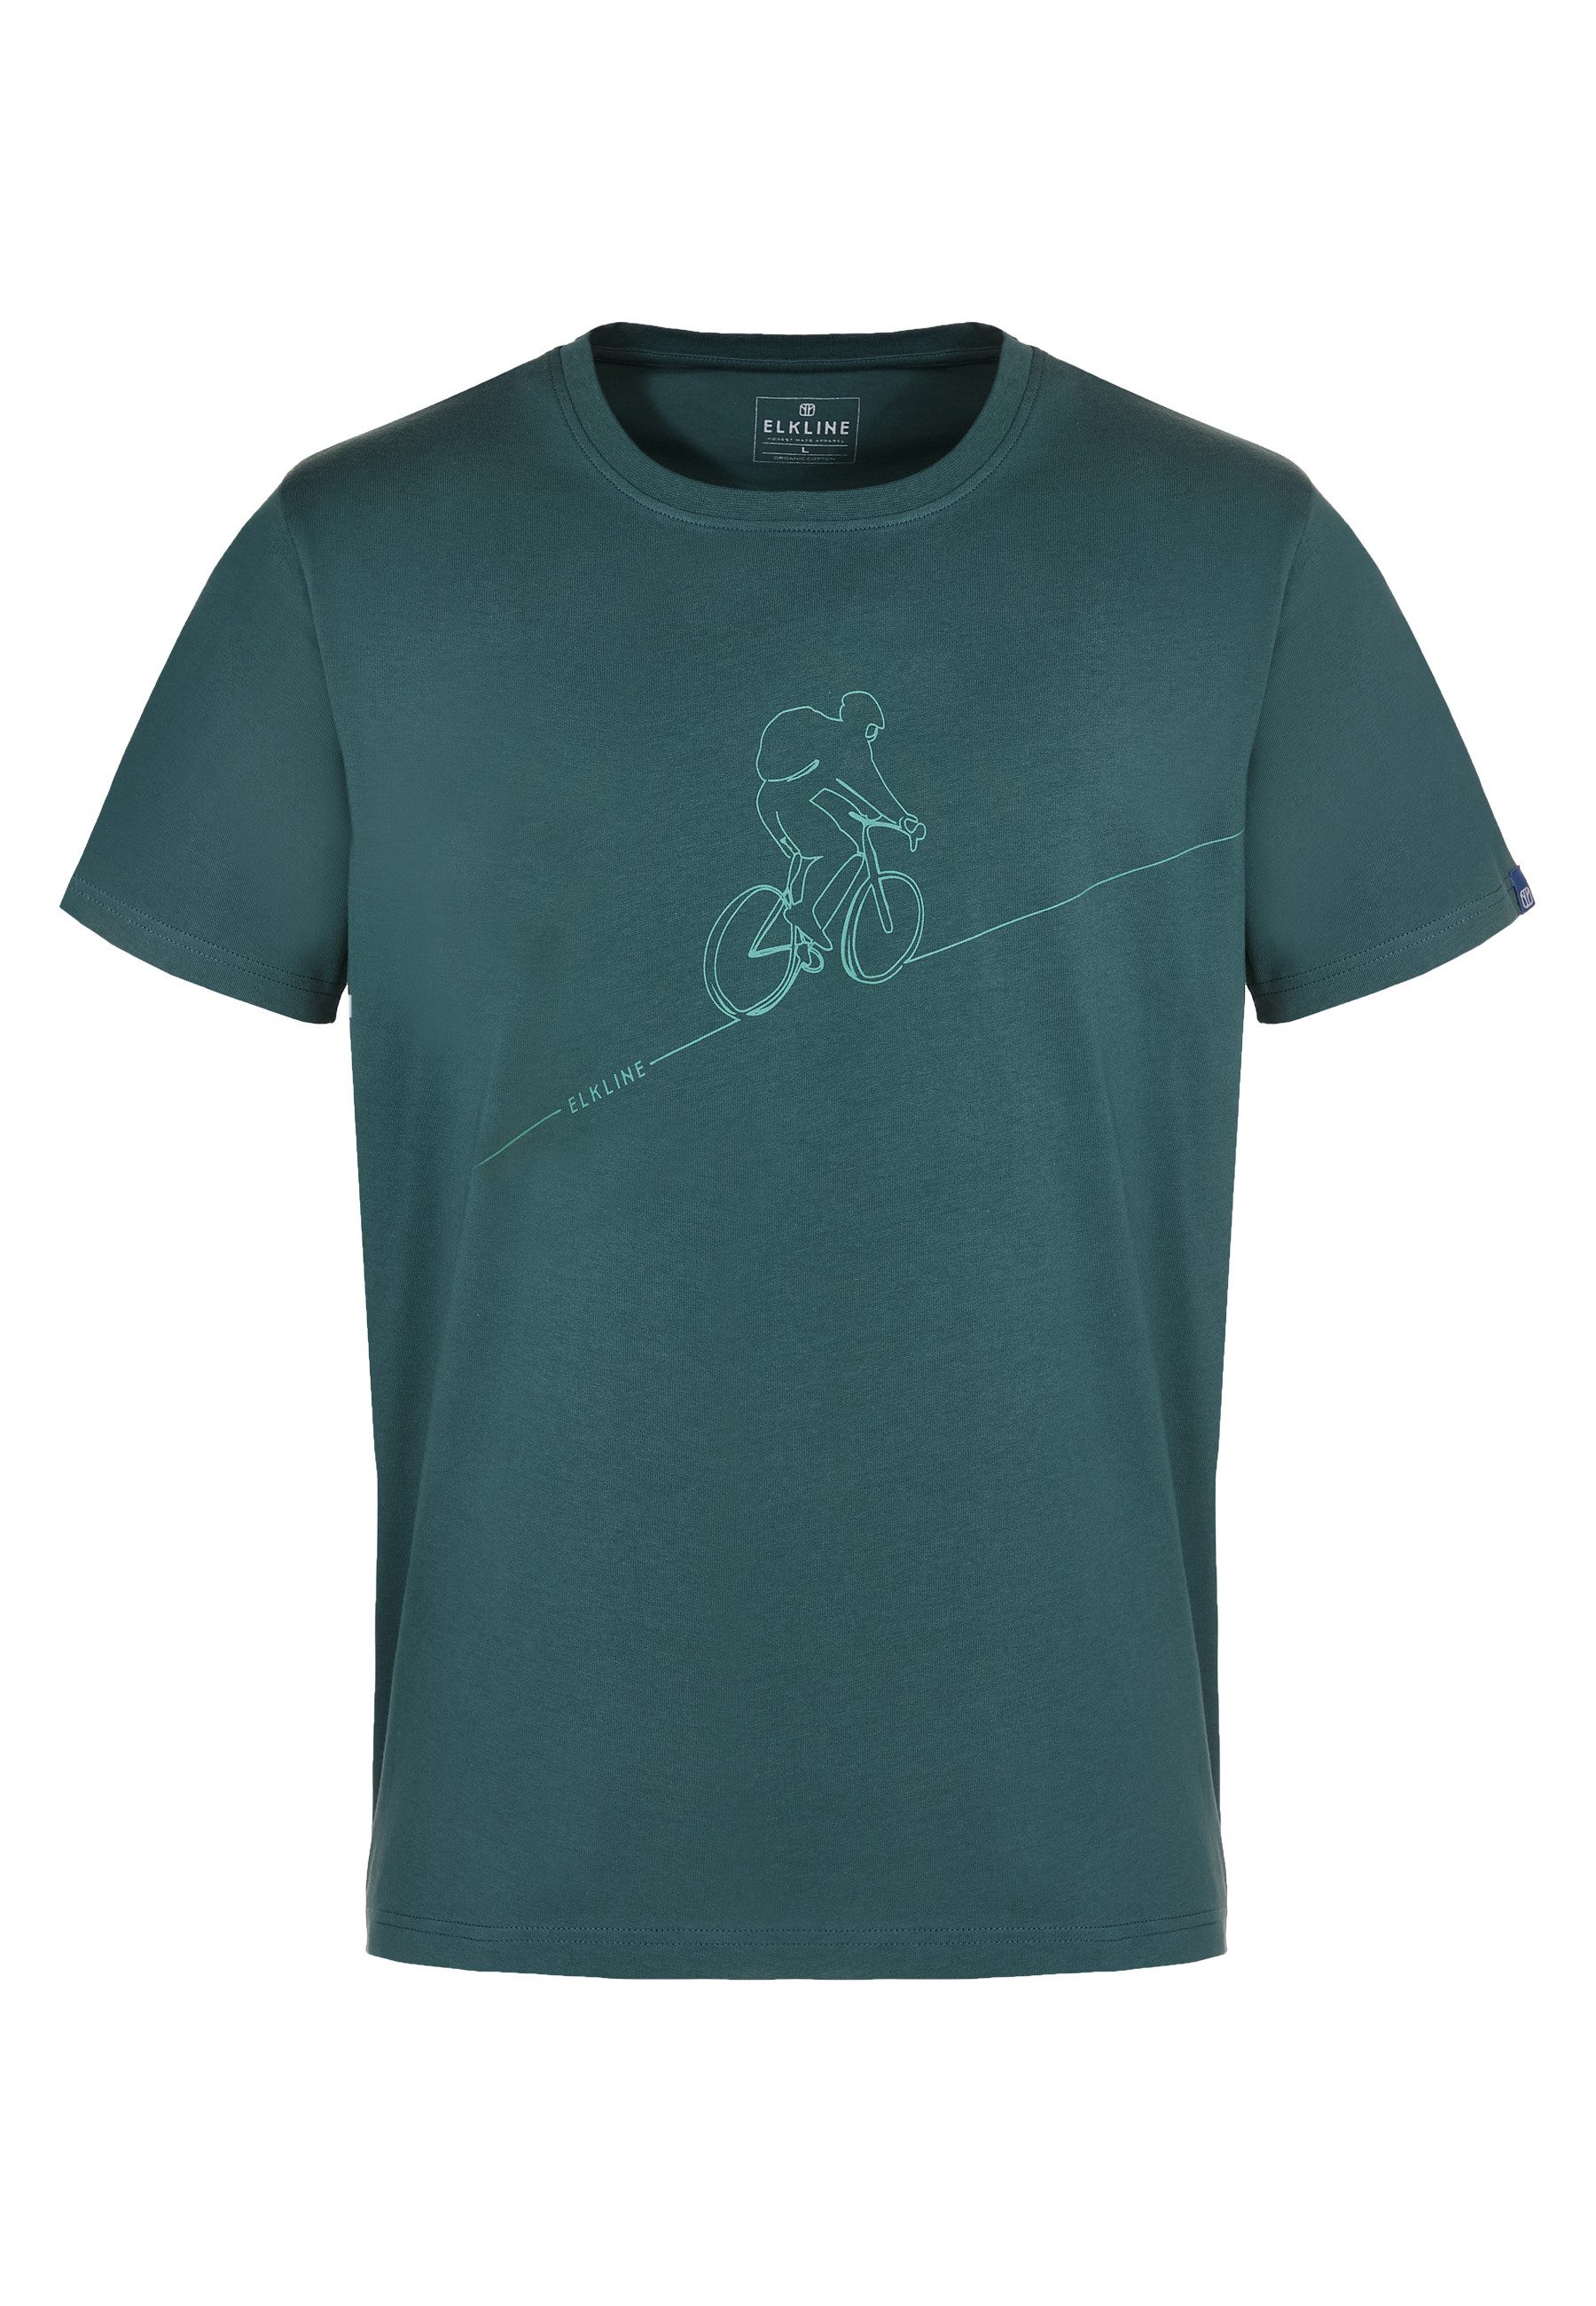 Elkline T-Shirt Downhill Fahrrad Siebdruck Motiv gerader Schnitt